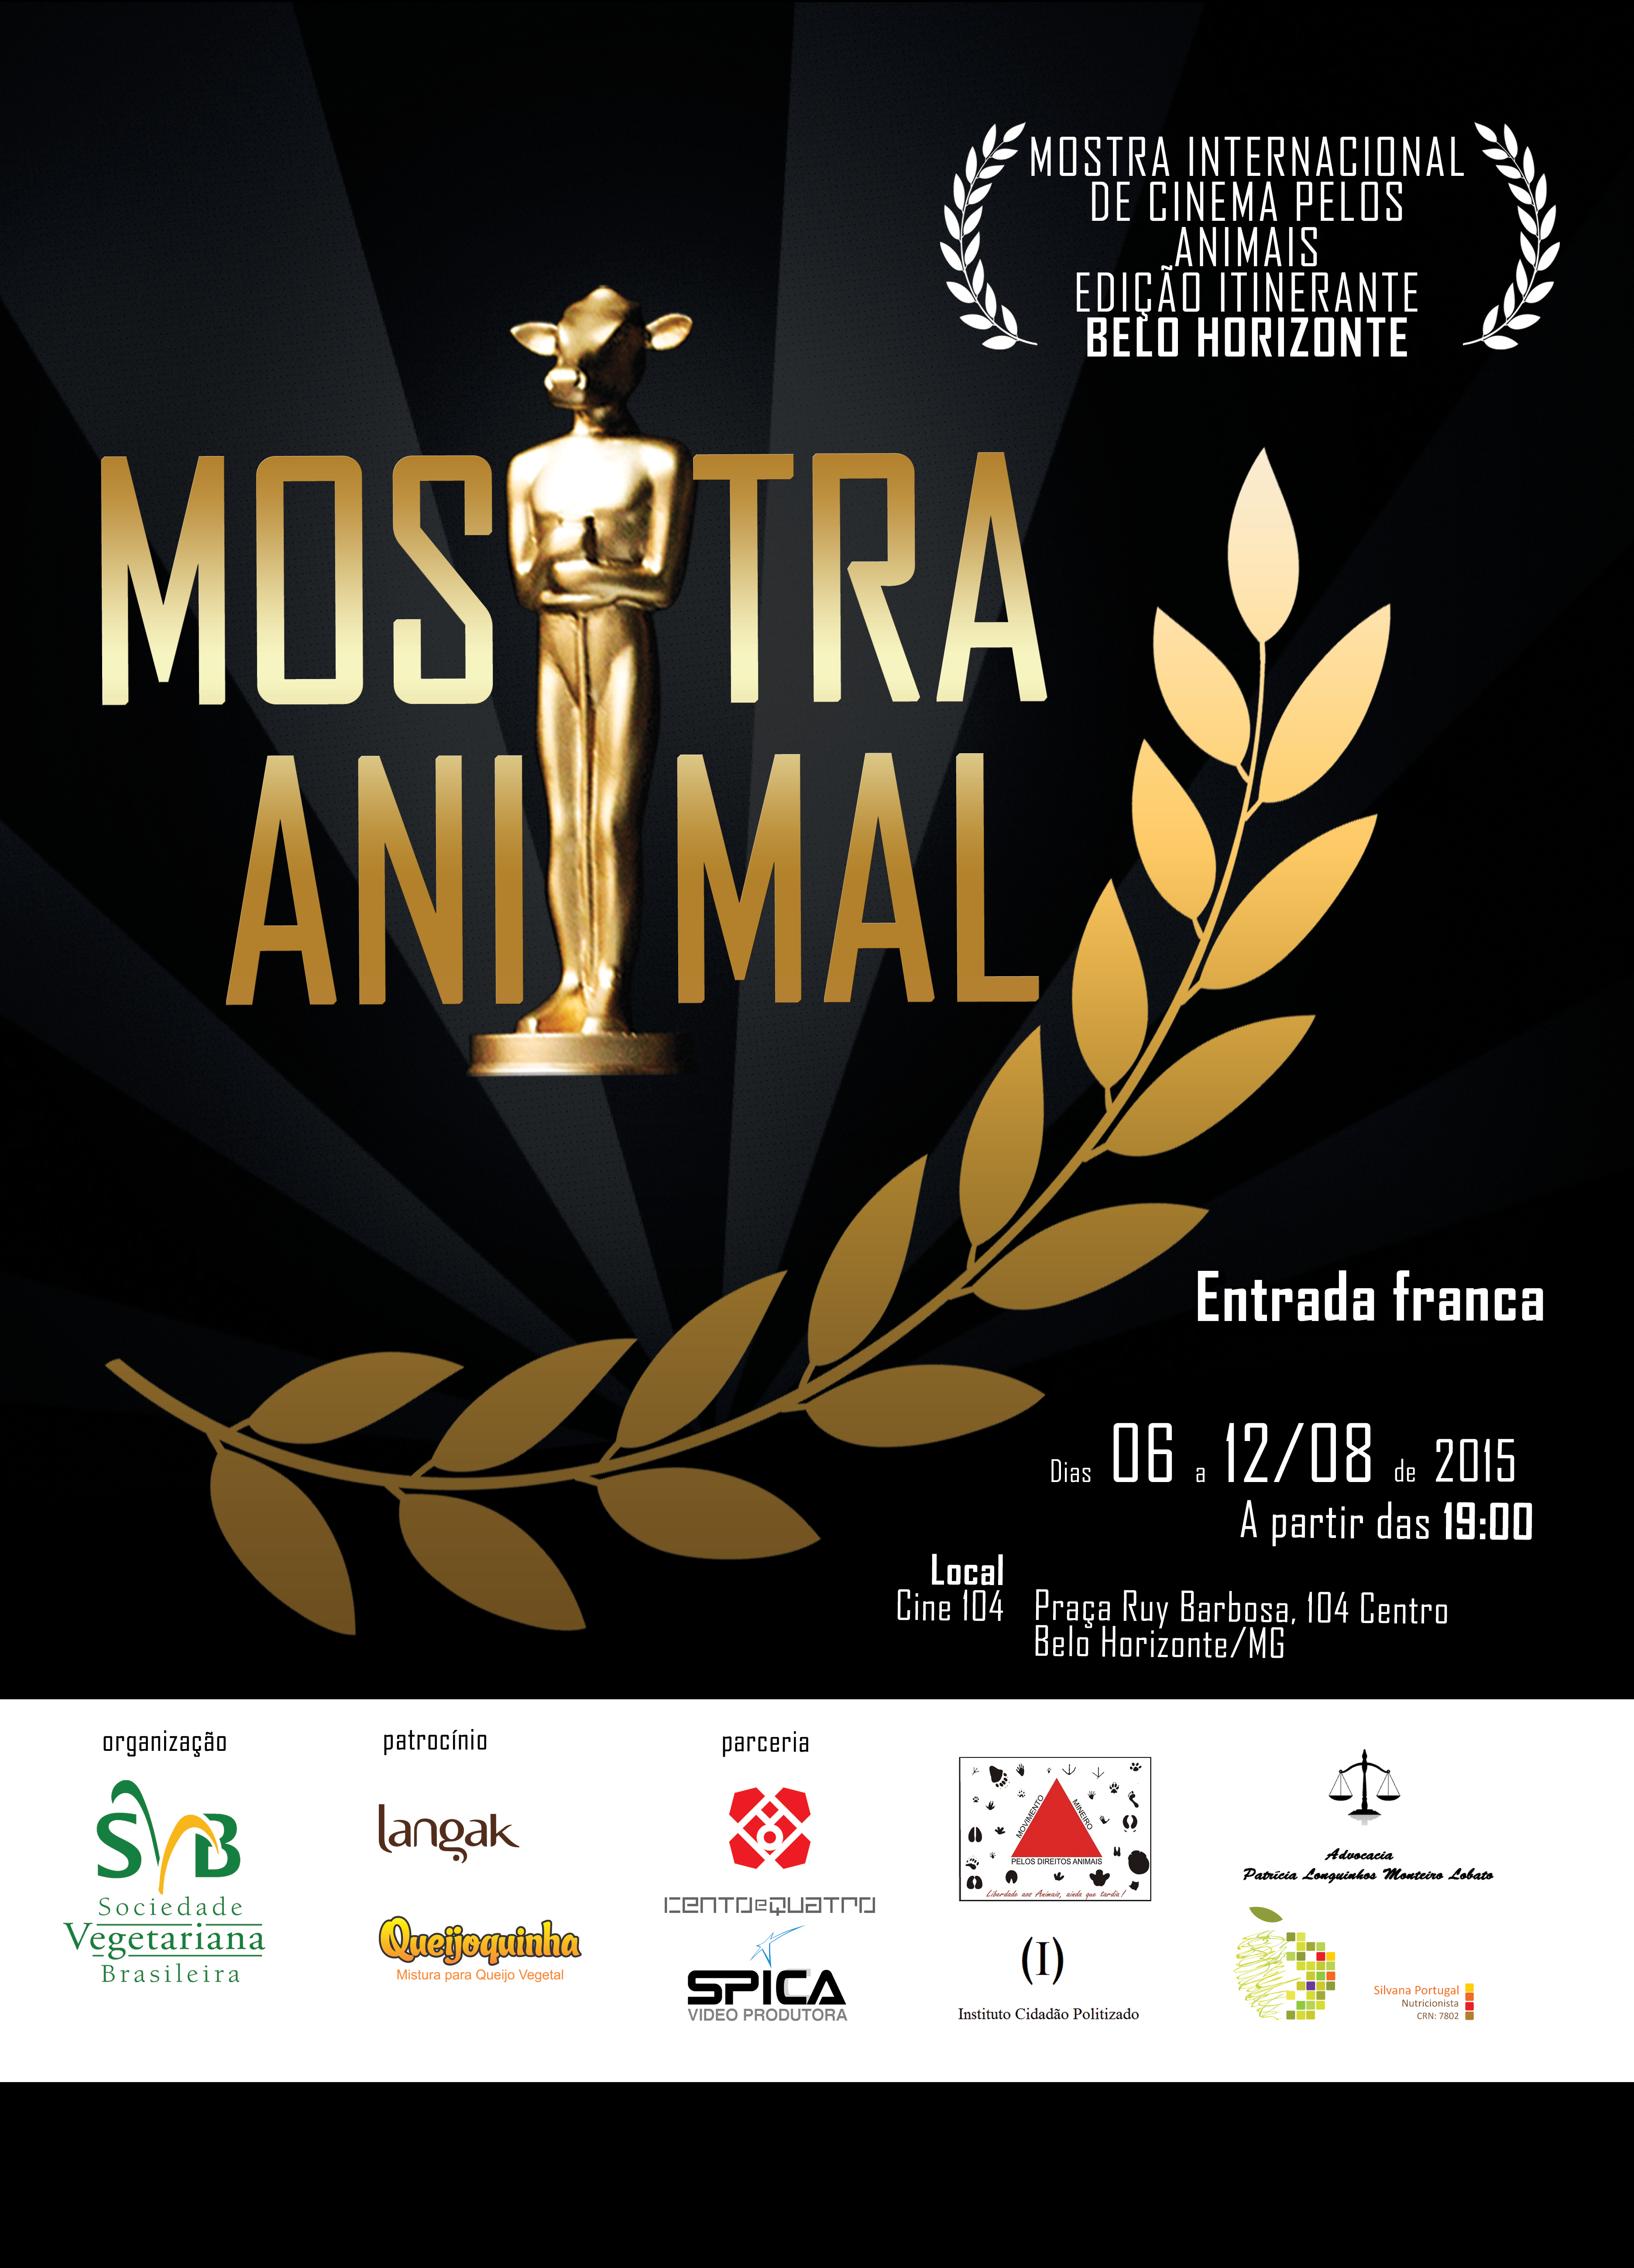 Mostra internacional de cinema pelos animais em Belo Horizonte